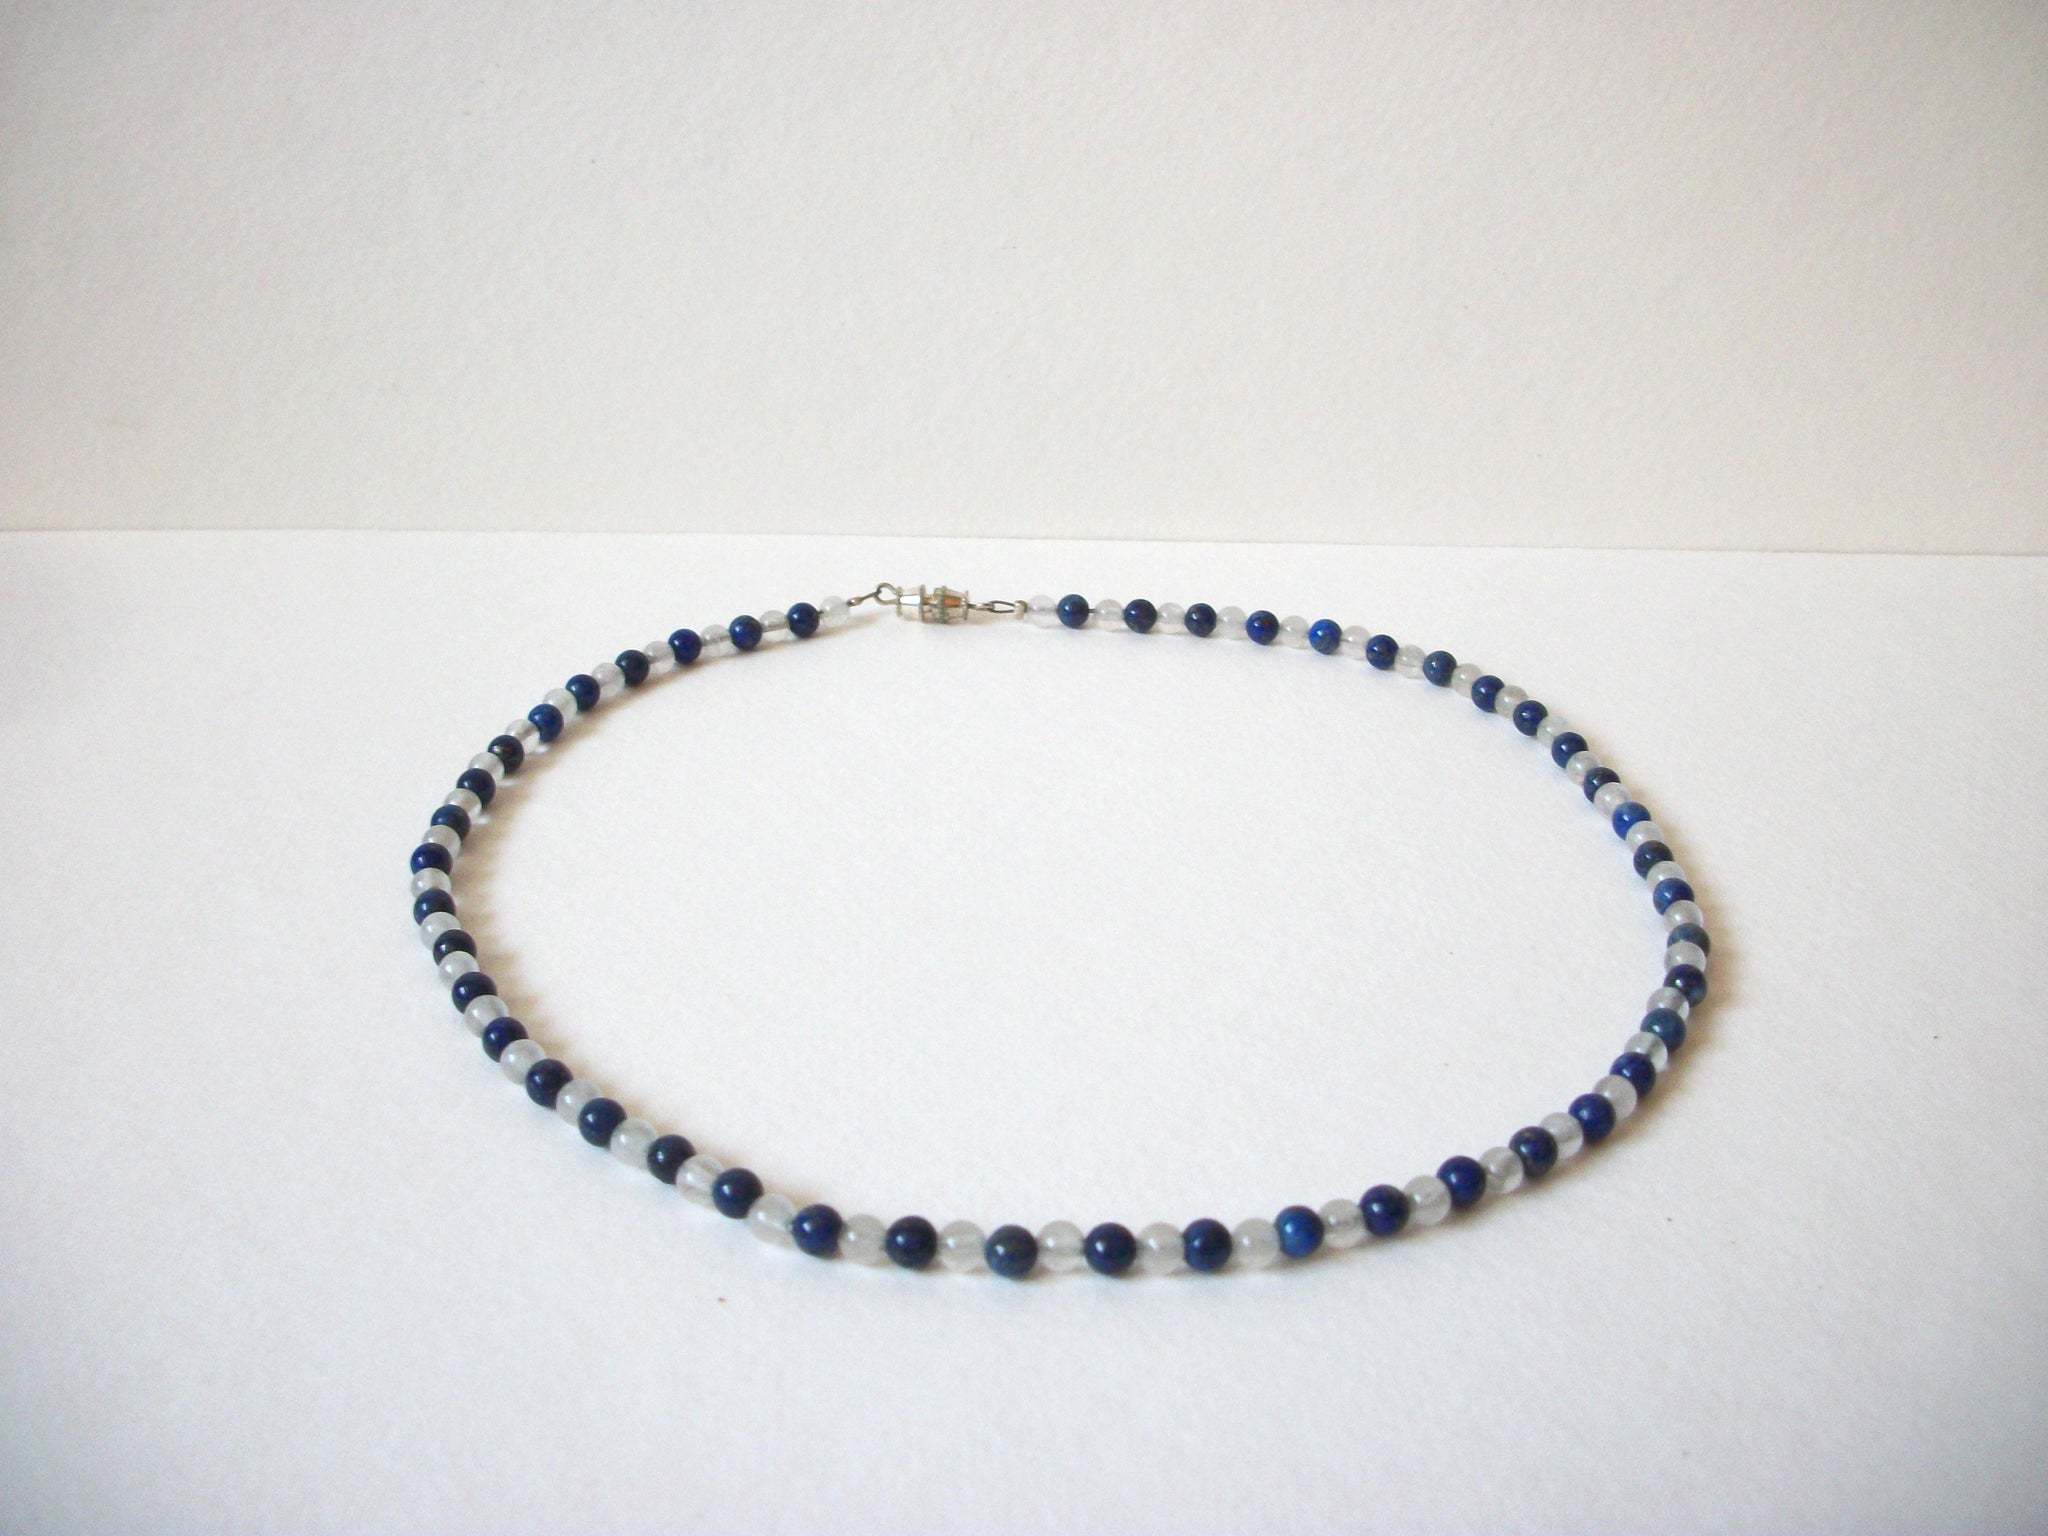 Blue Lapis Blue Lace Agate Stones Necklace 71120